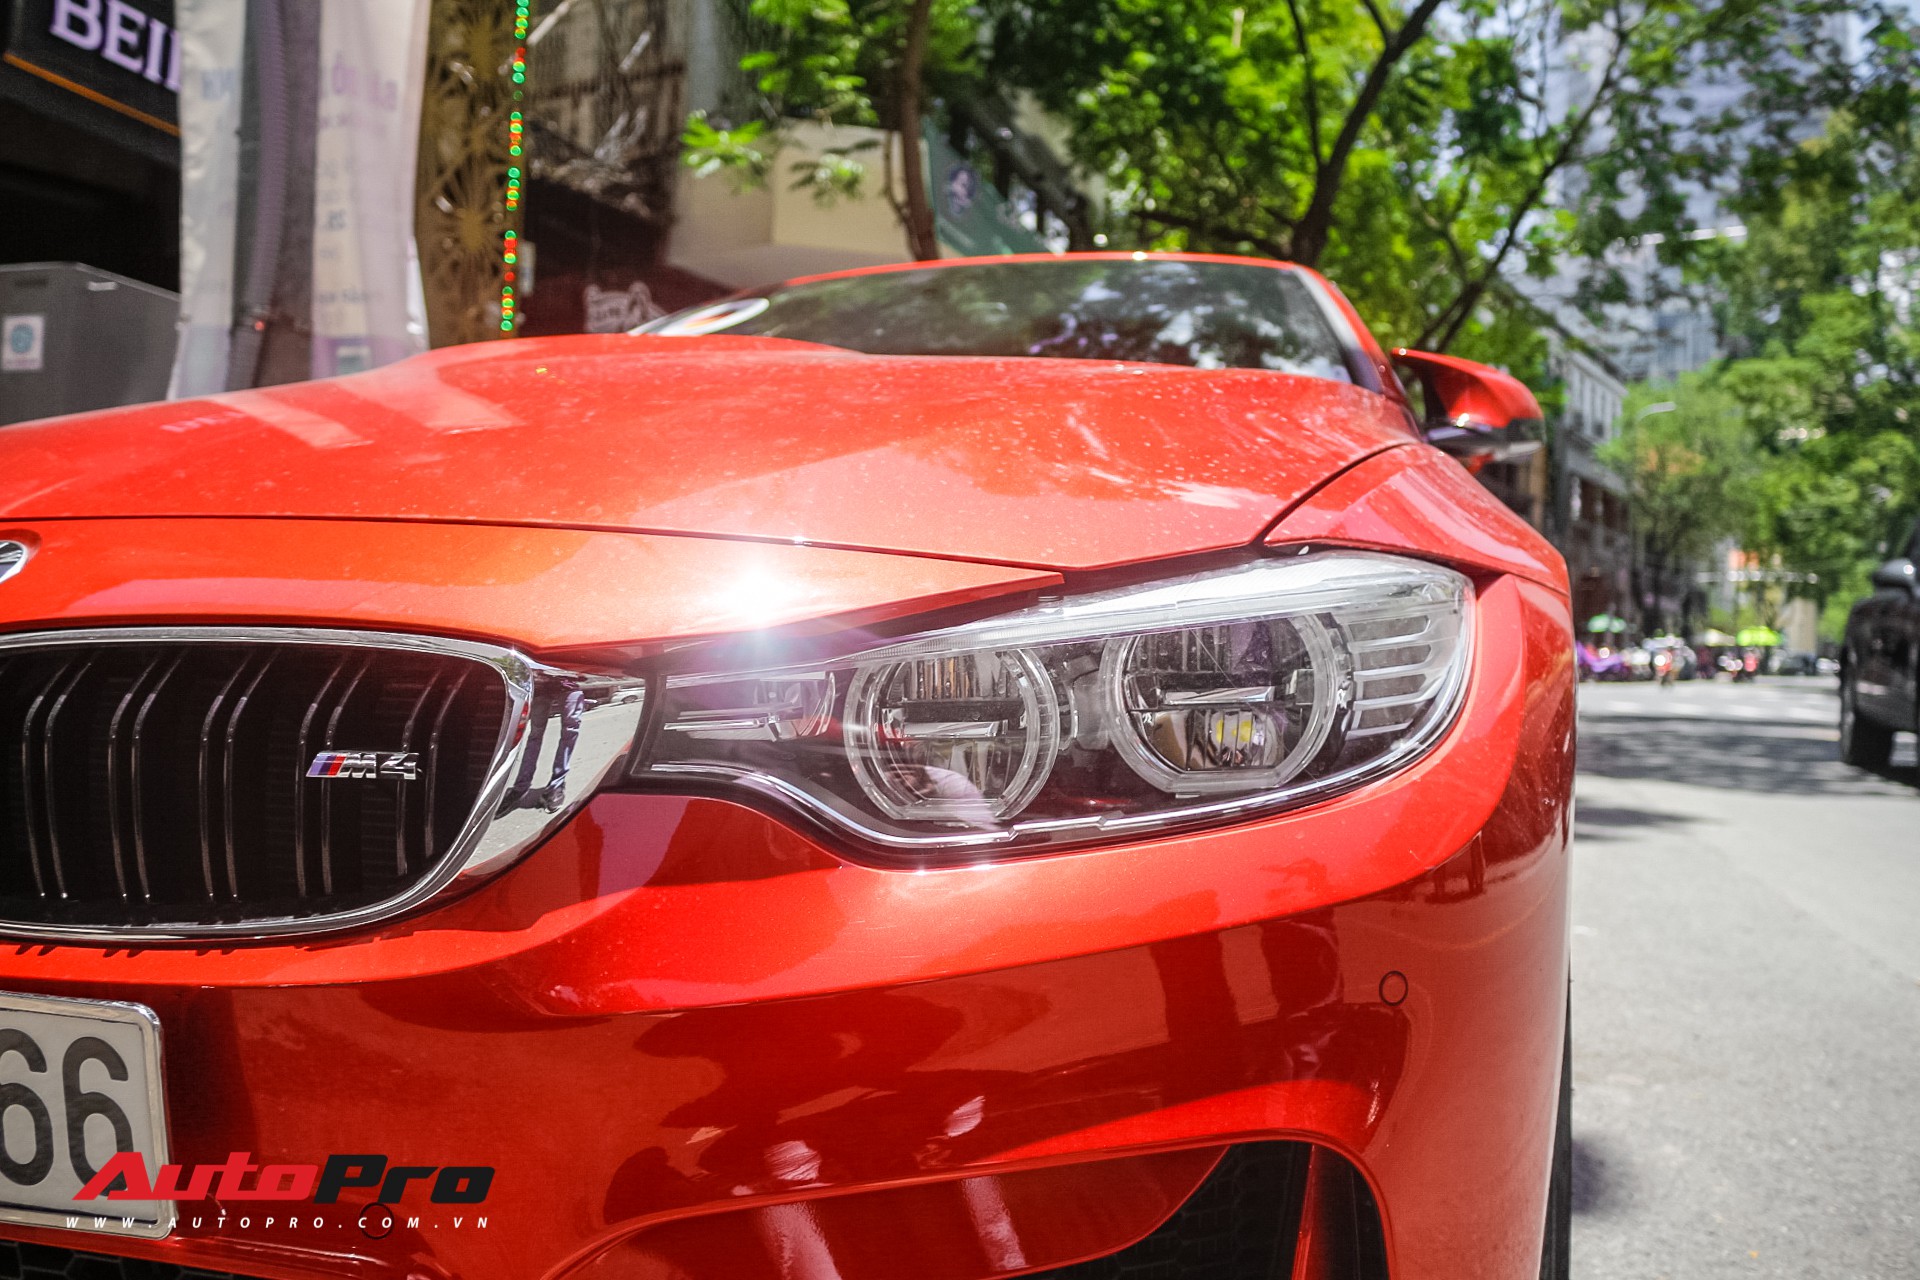 Hàng hiếm BMW M4 mui trần giá 4,2 tỷ đồng tại Sài Gòn